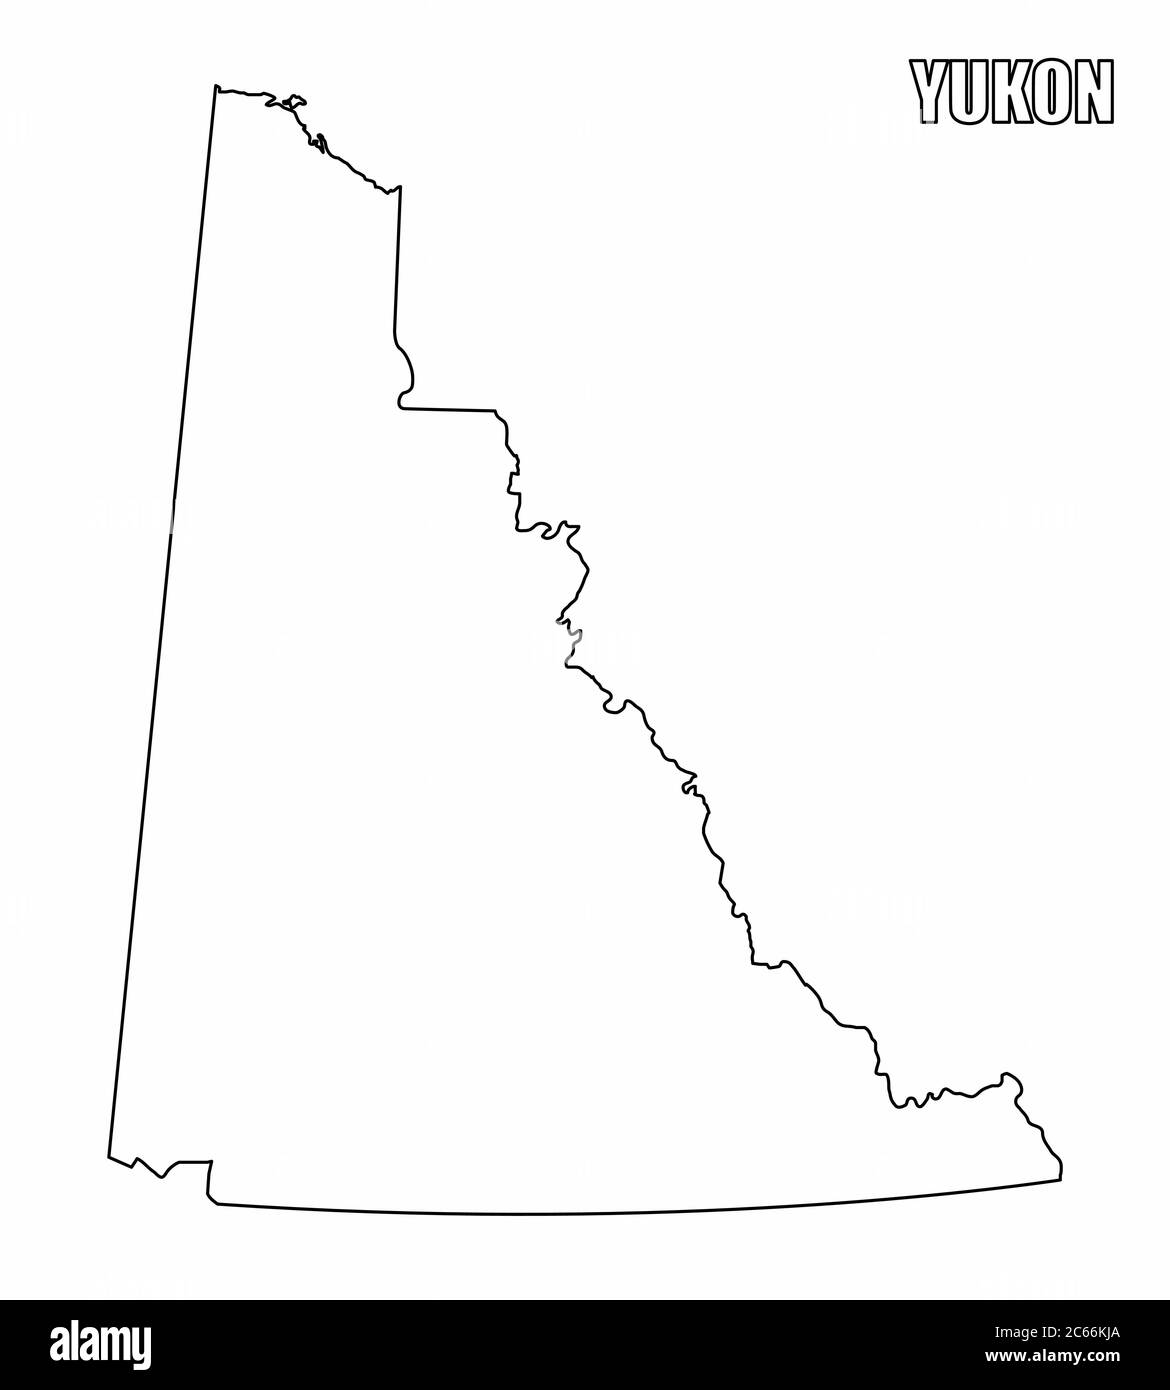 Territorio di Yukon Mappa generale Illustrazione Vettoriale